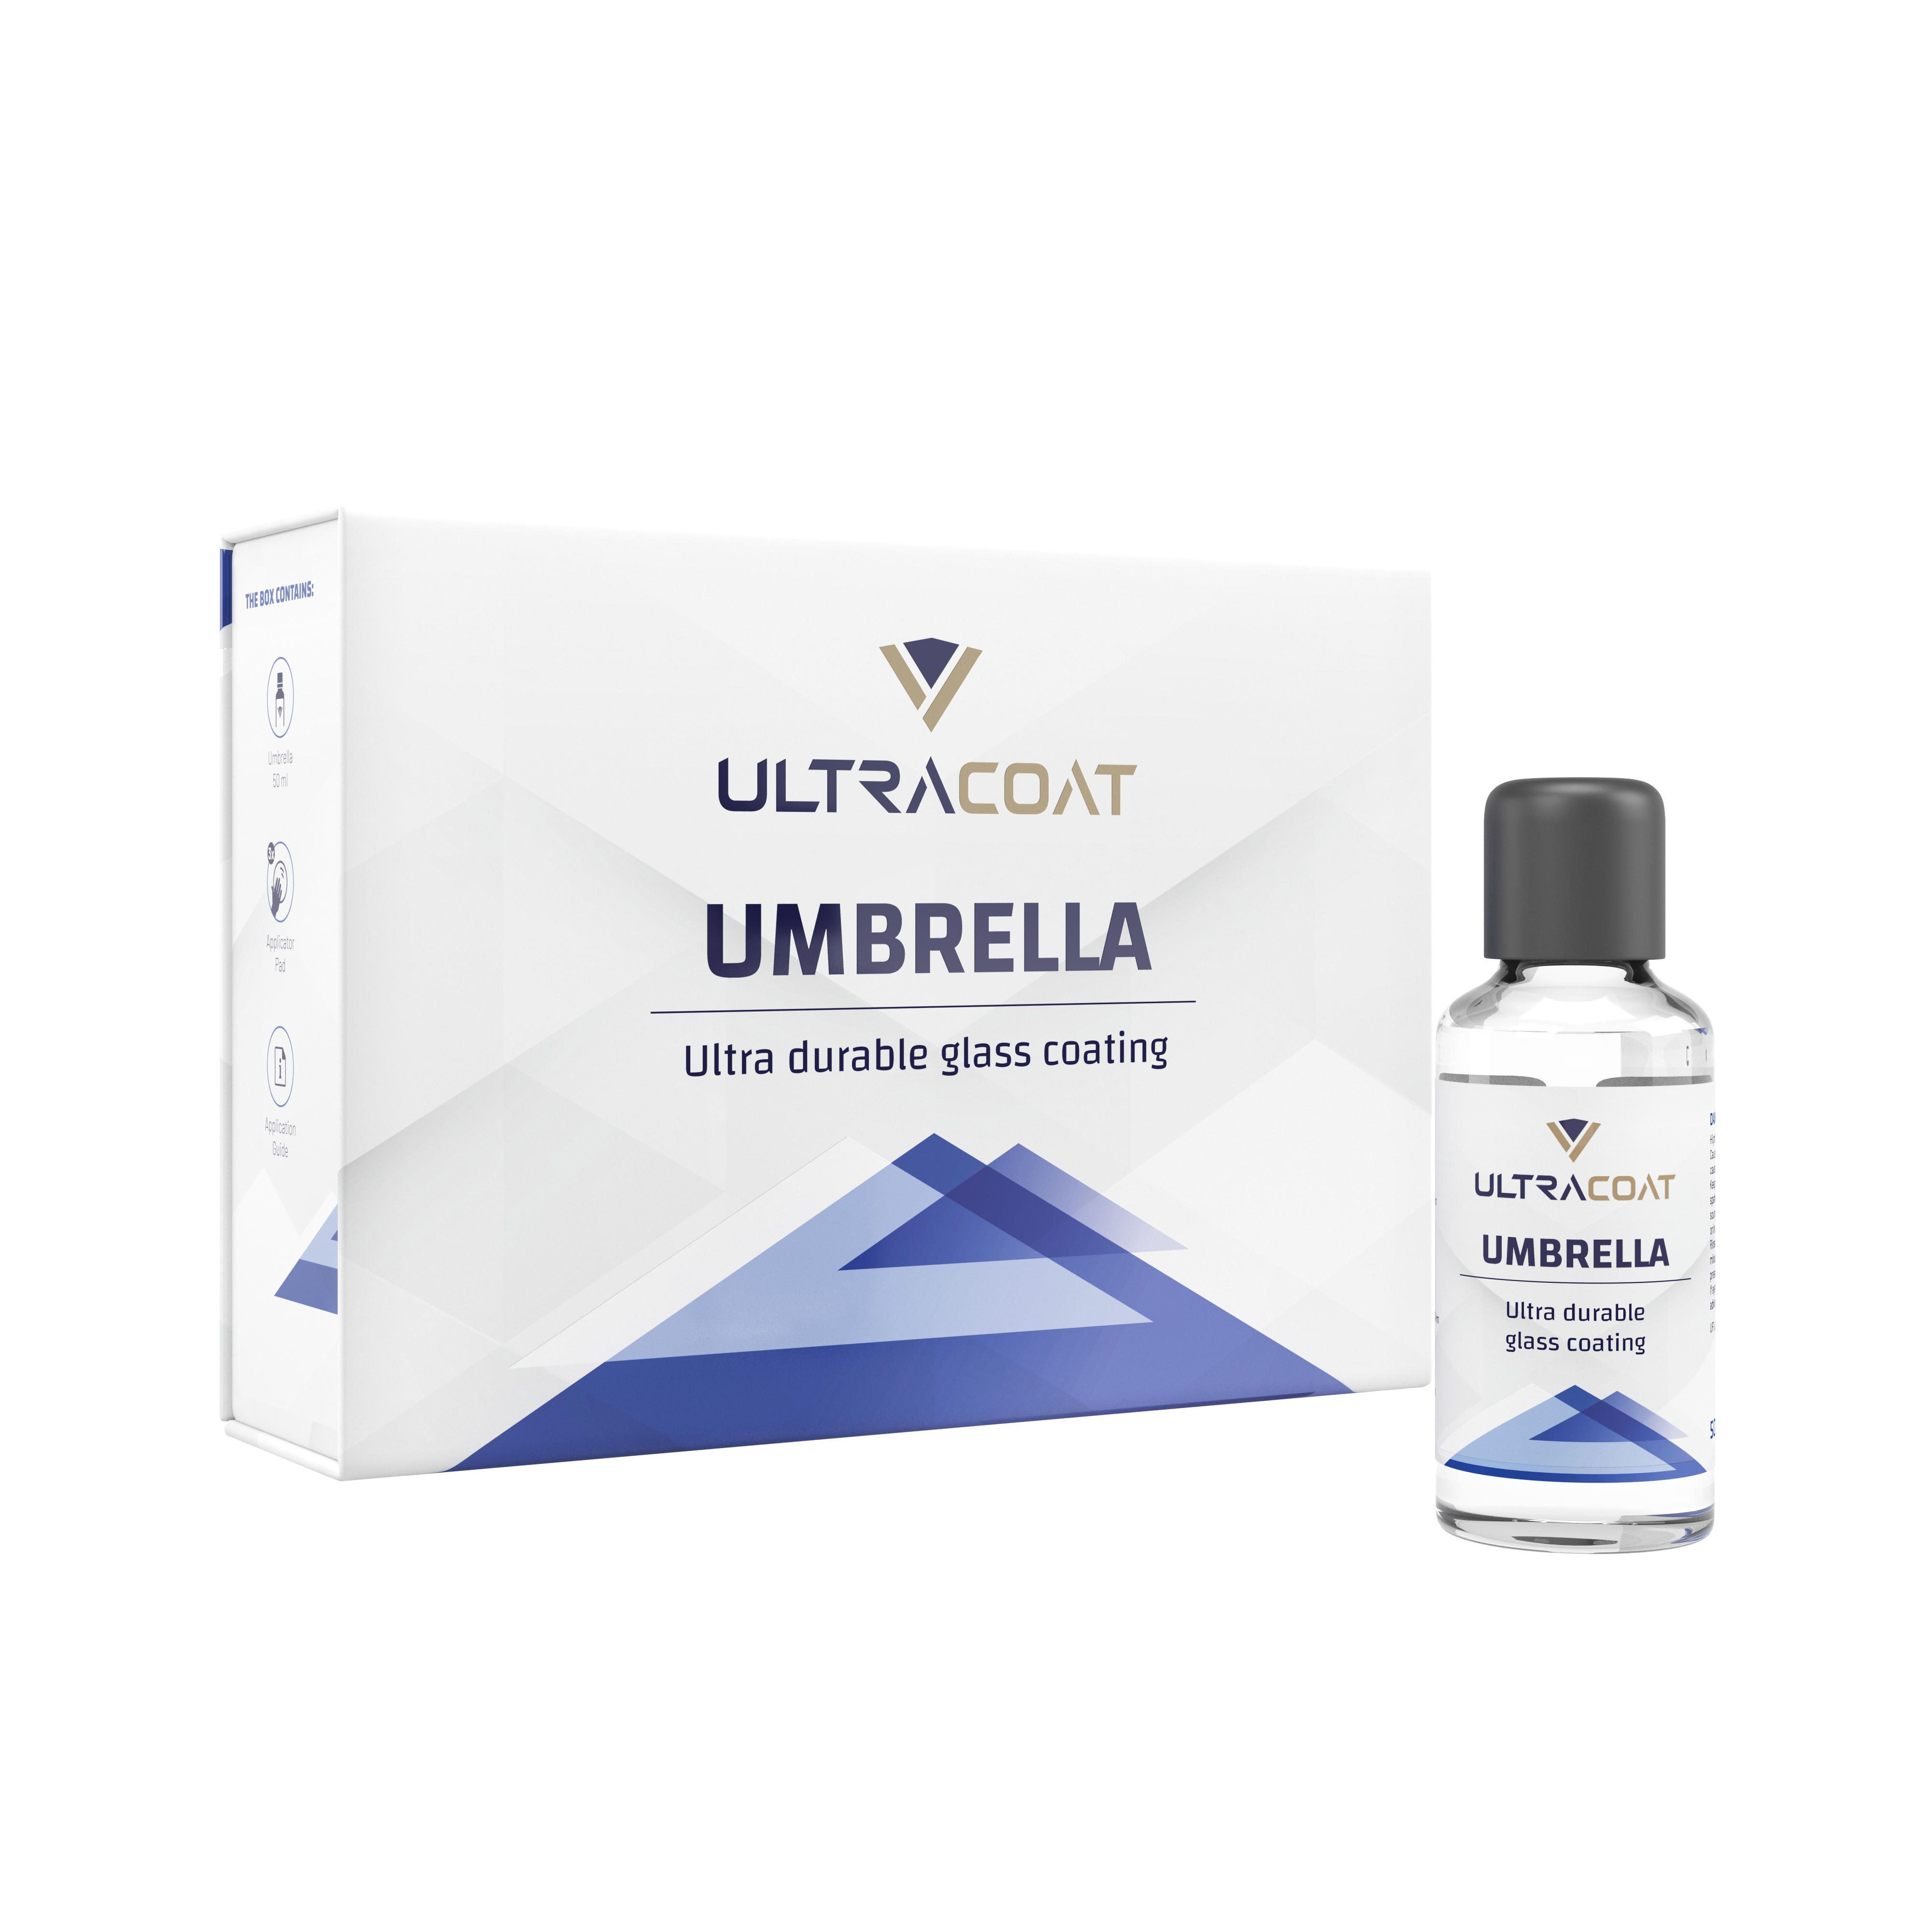 Ultracoat Umbrella